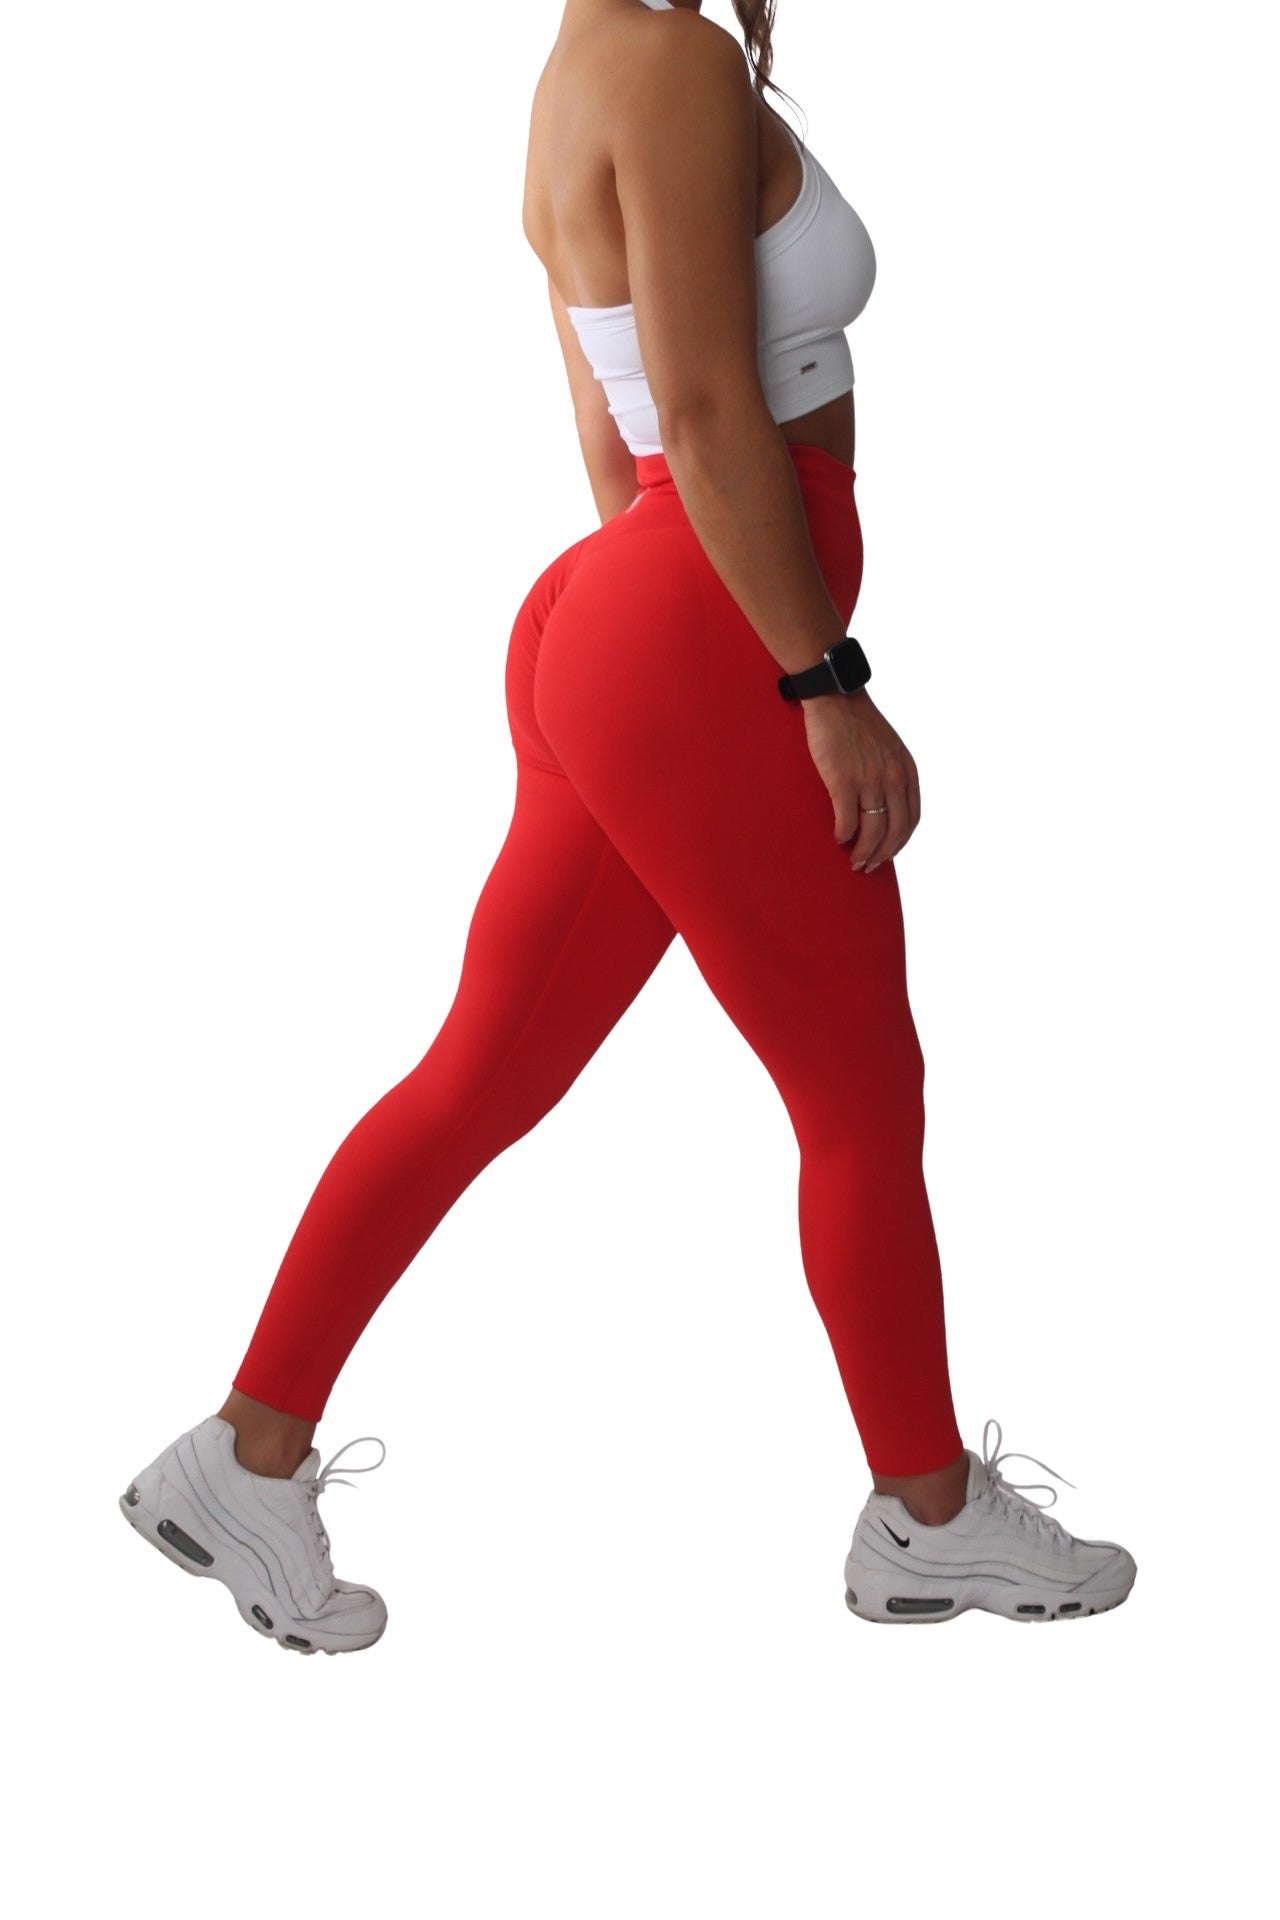 Gym bunny Scrunch leggings active wear - red – Shape Wear Shop